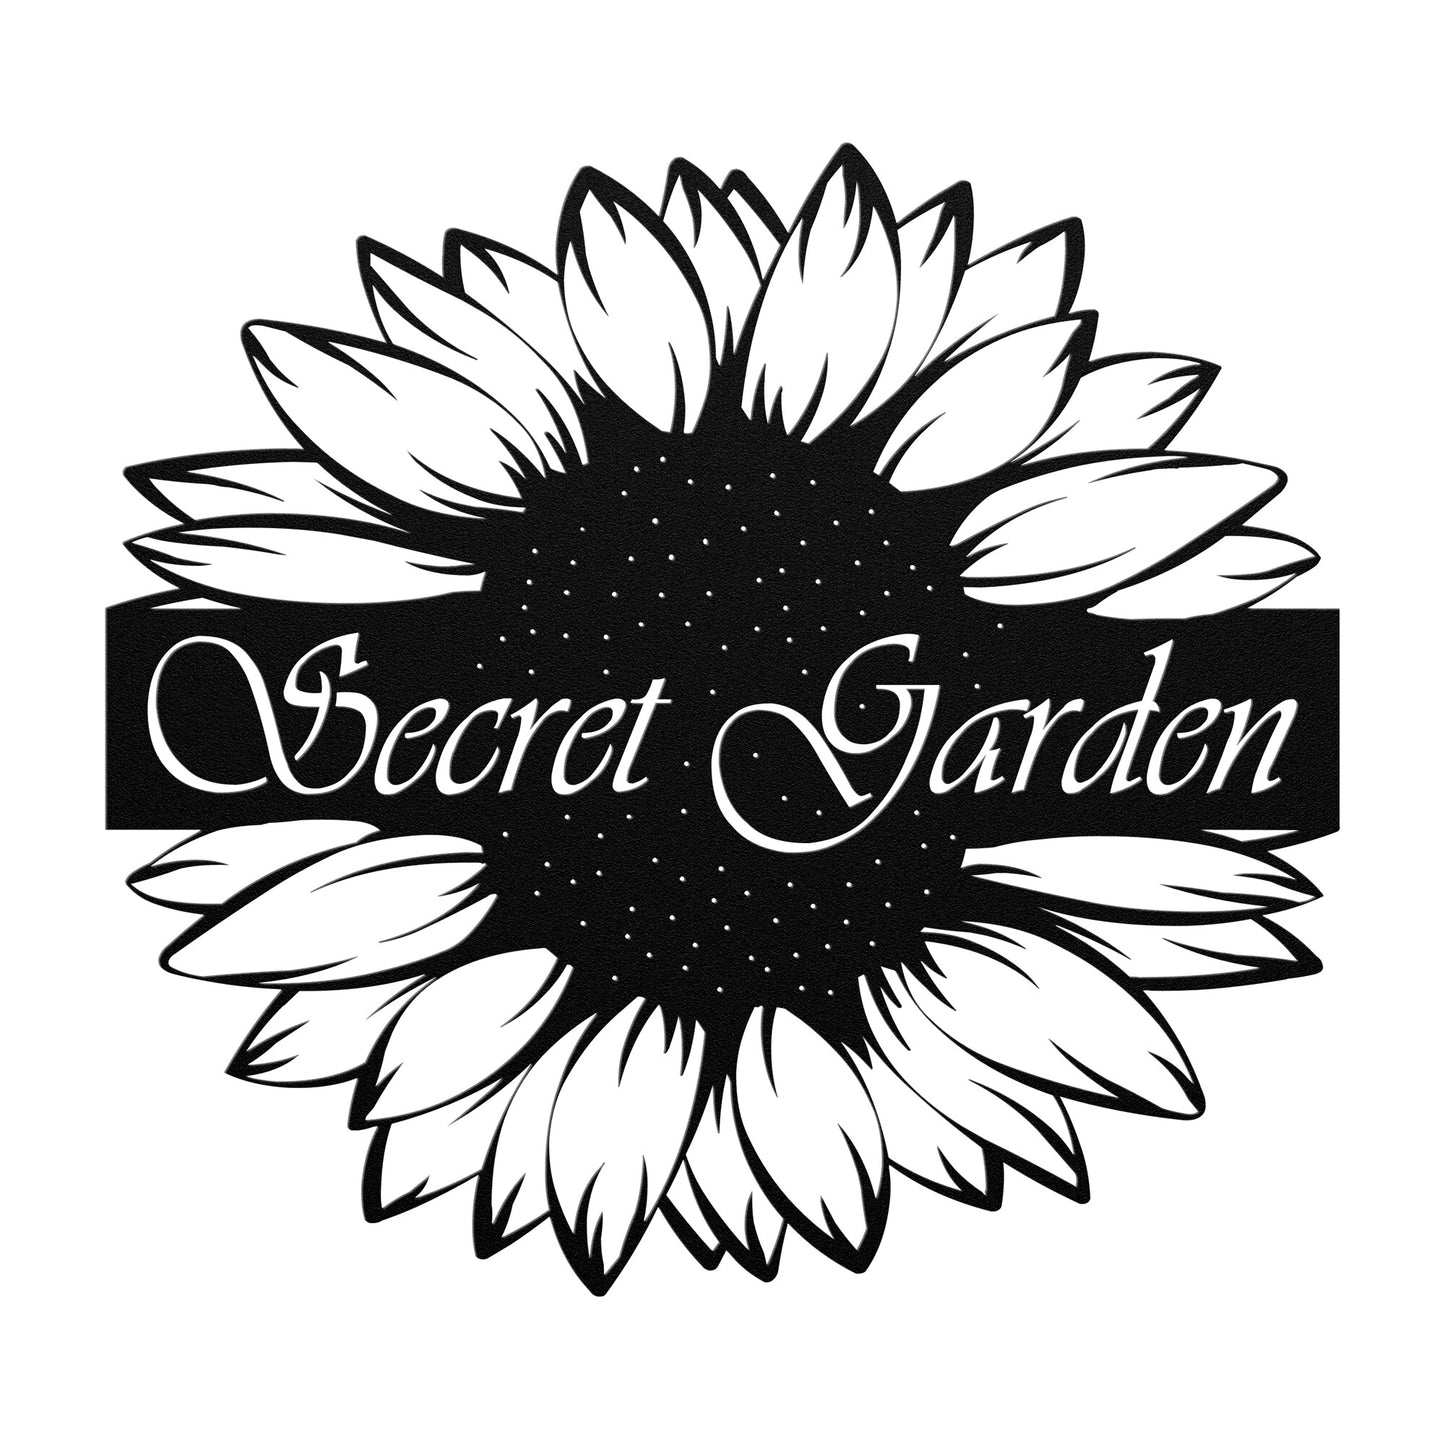 Secret Garden Sunflower Die Cut Metal Wall Art Sign